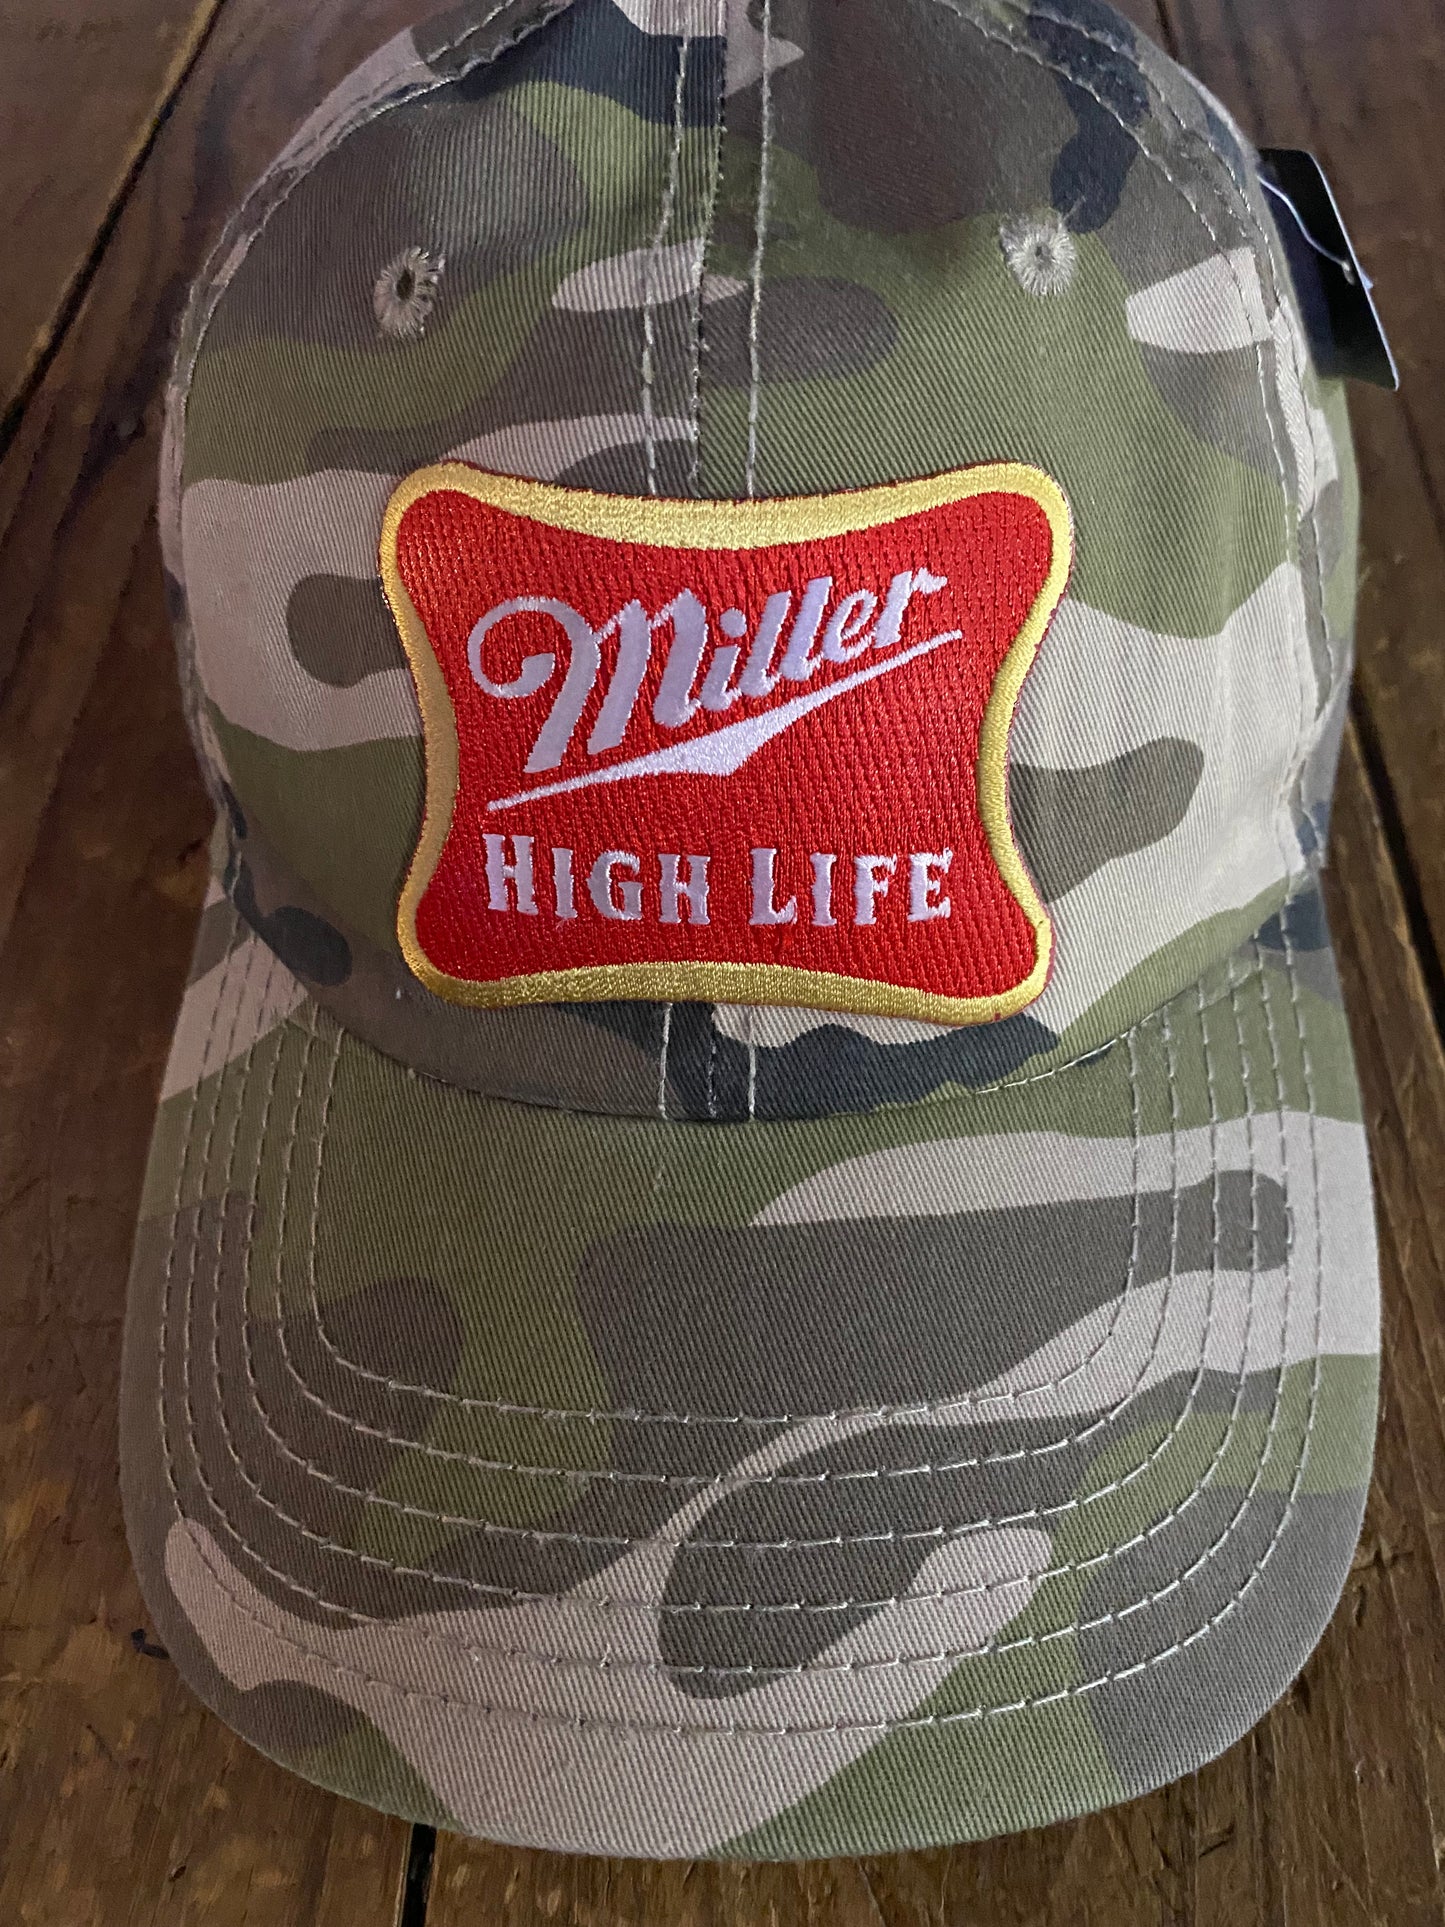 Miller High Life Baseball Hat